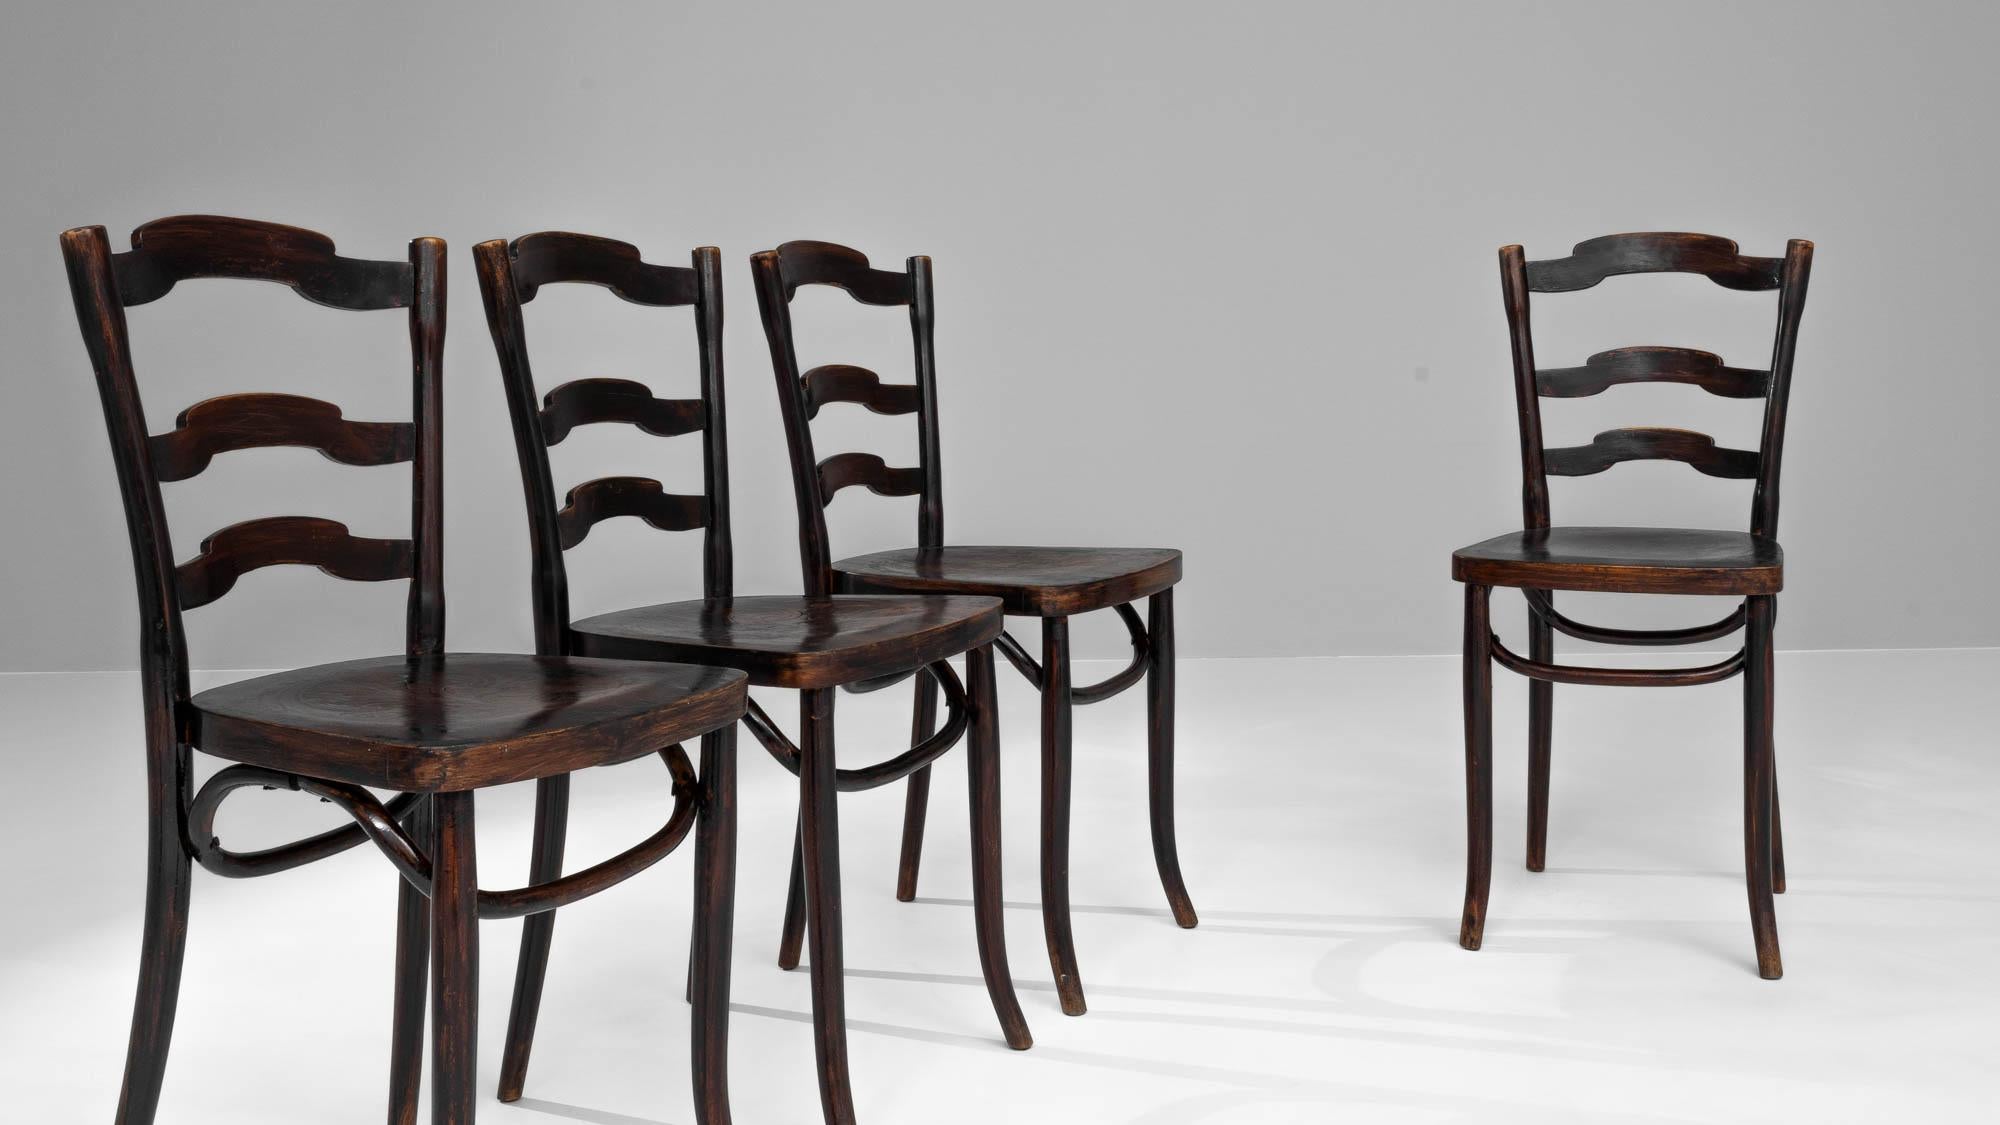 Remontez le temps avec cet ensemble exquis de quatre chaises de salle à manger françaises en bois du début du 20e siècle, un ajout classique à toute salle à manger. Chaque chaise a été méticuleusement fabriquée et bénéficie d'une riche finition en